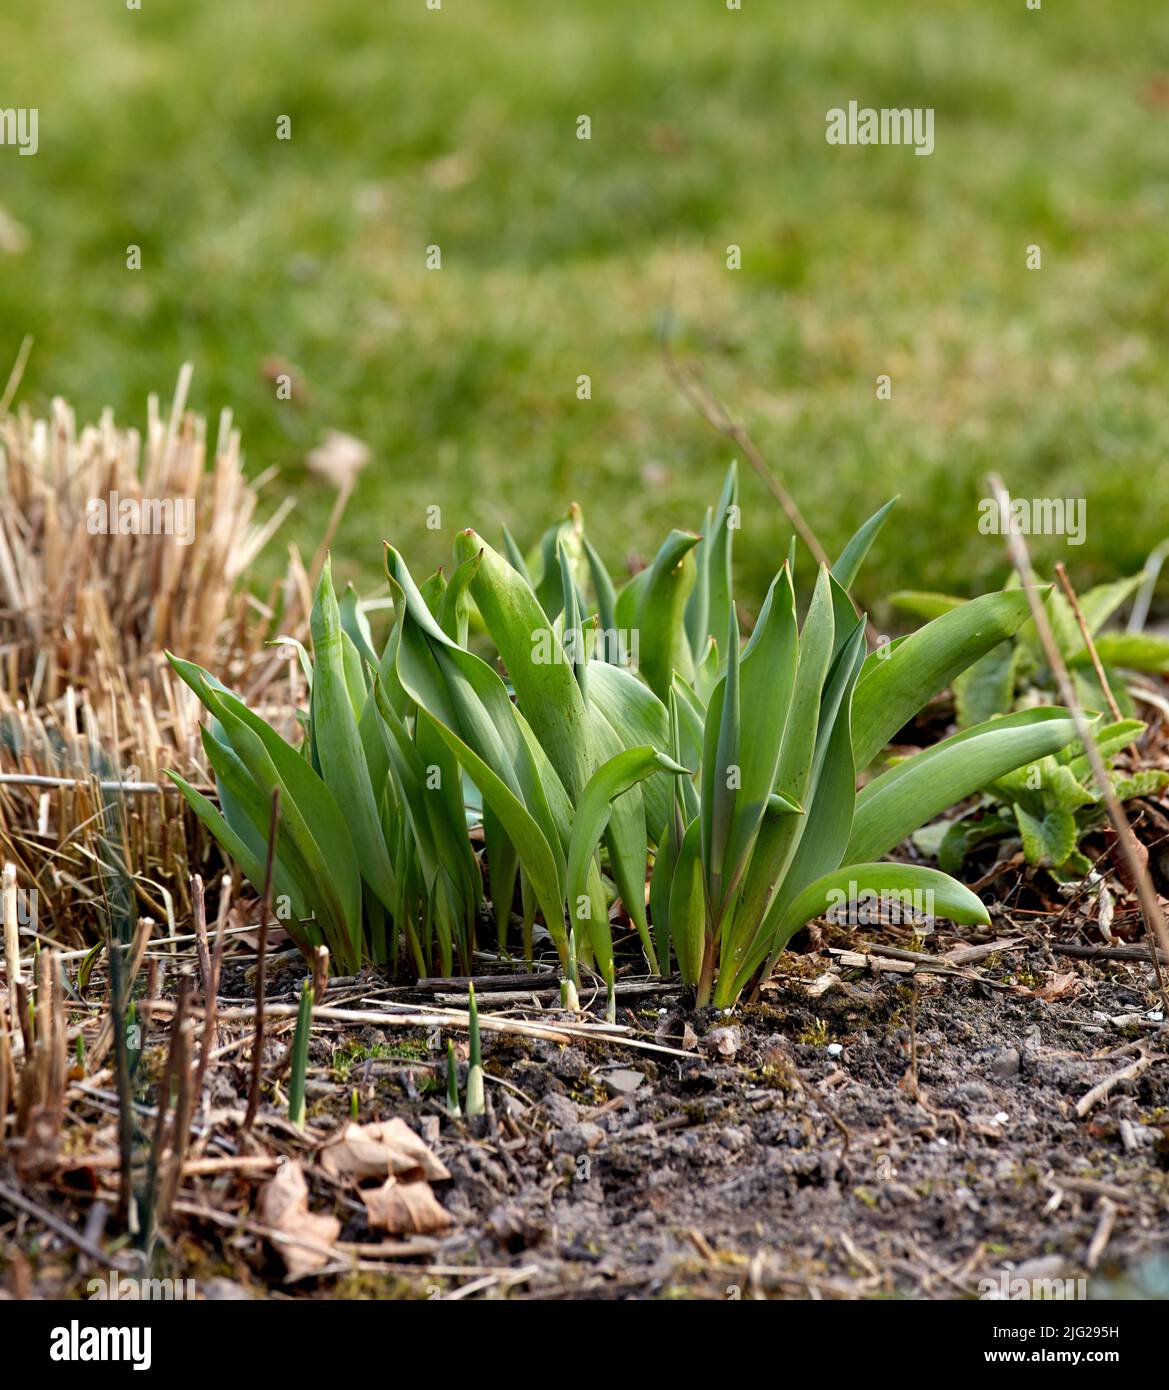 Nahaufnahme von grünen Pflanzensprossen, die in den Boden im Garten gepflanzt wurden. Details des Wachstumsprozesses einer Tulpenblume, die im Frühjahr wächst. Gartenarbeit Stockfoto